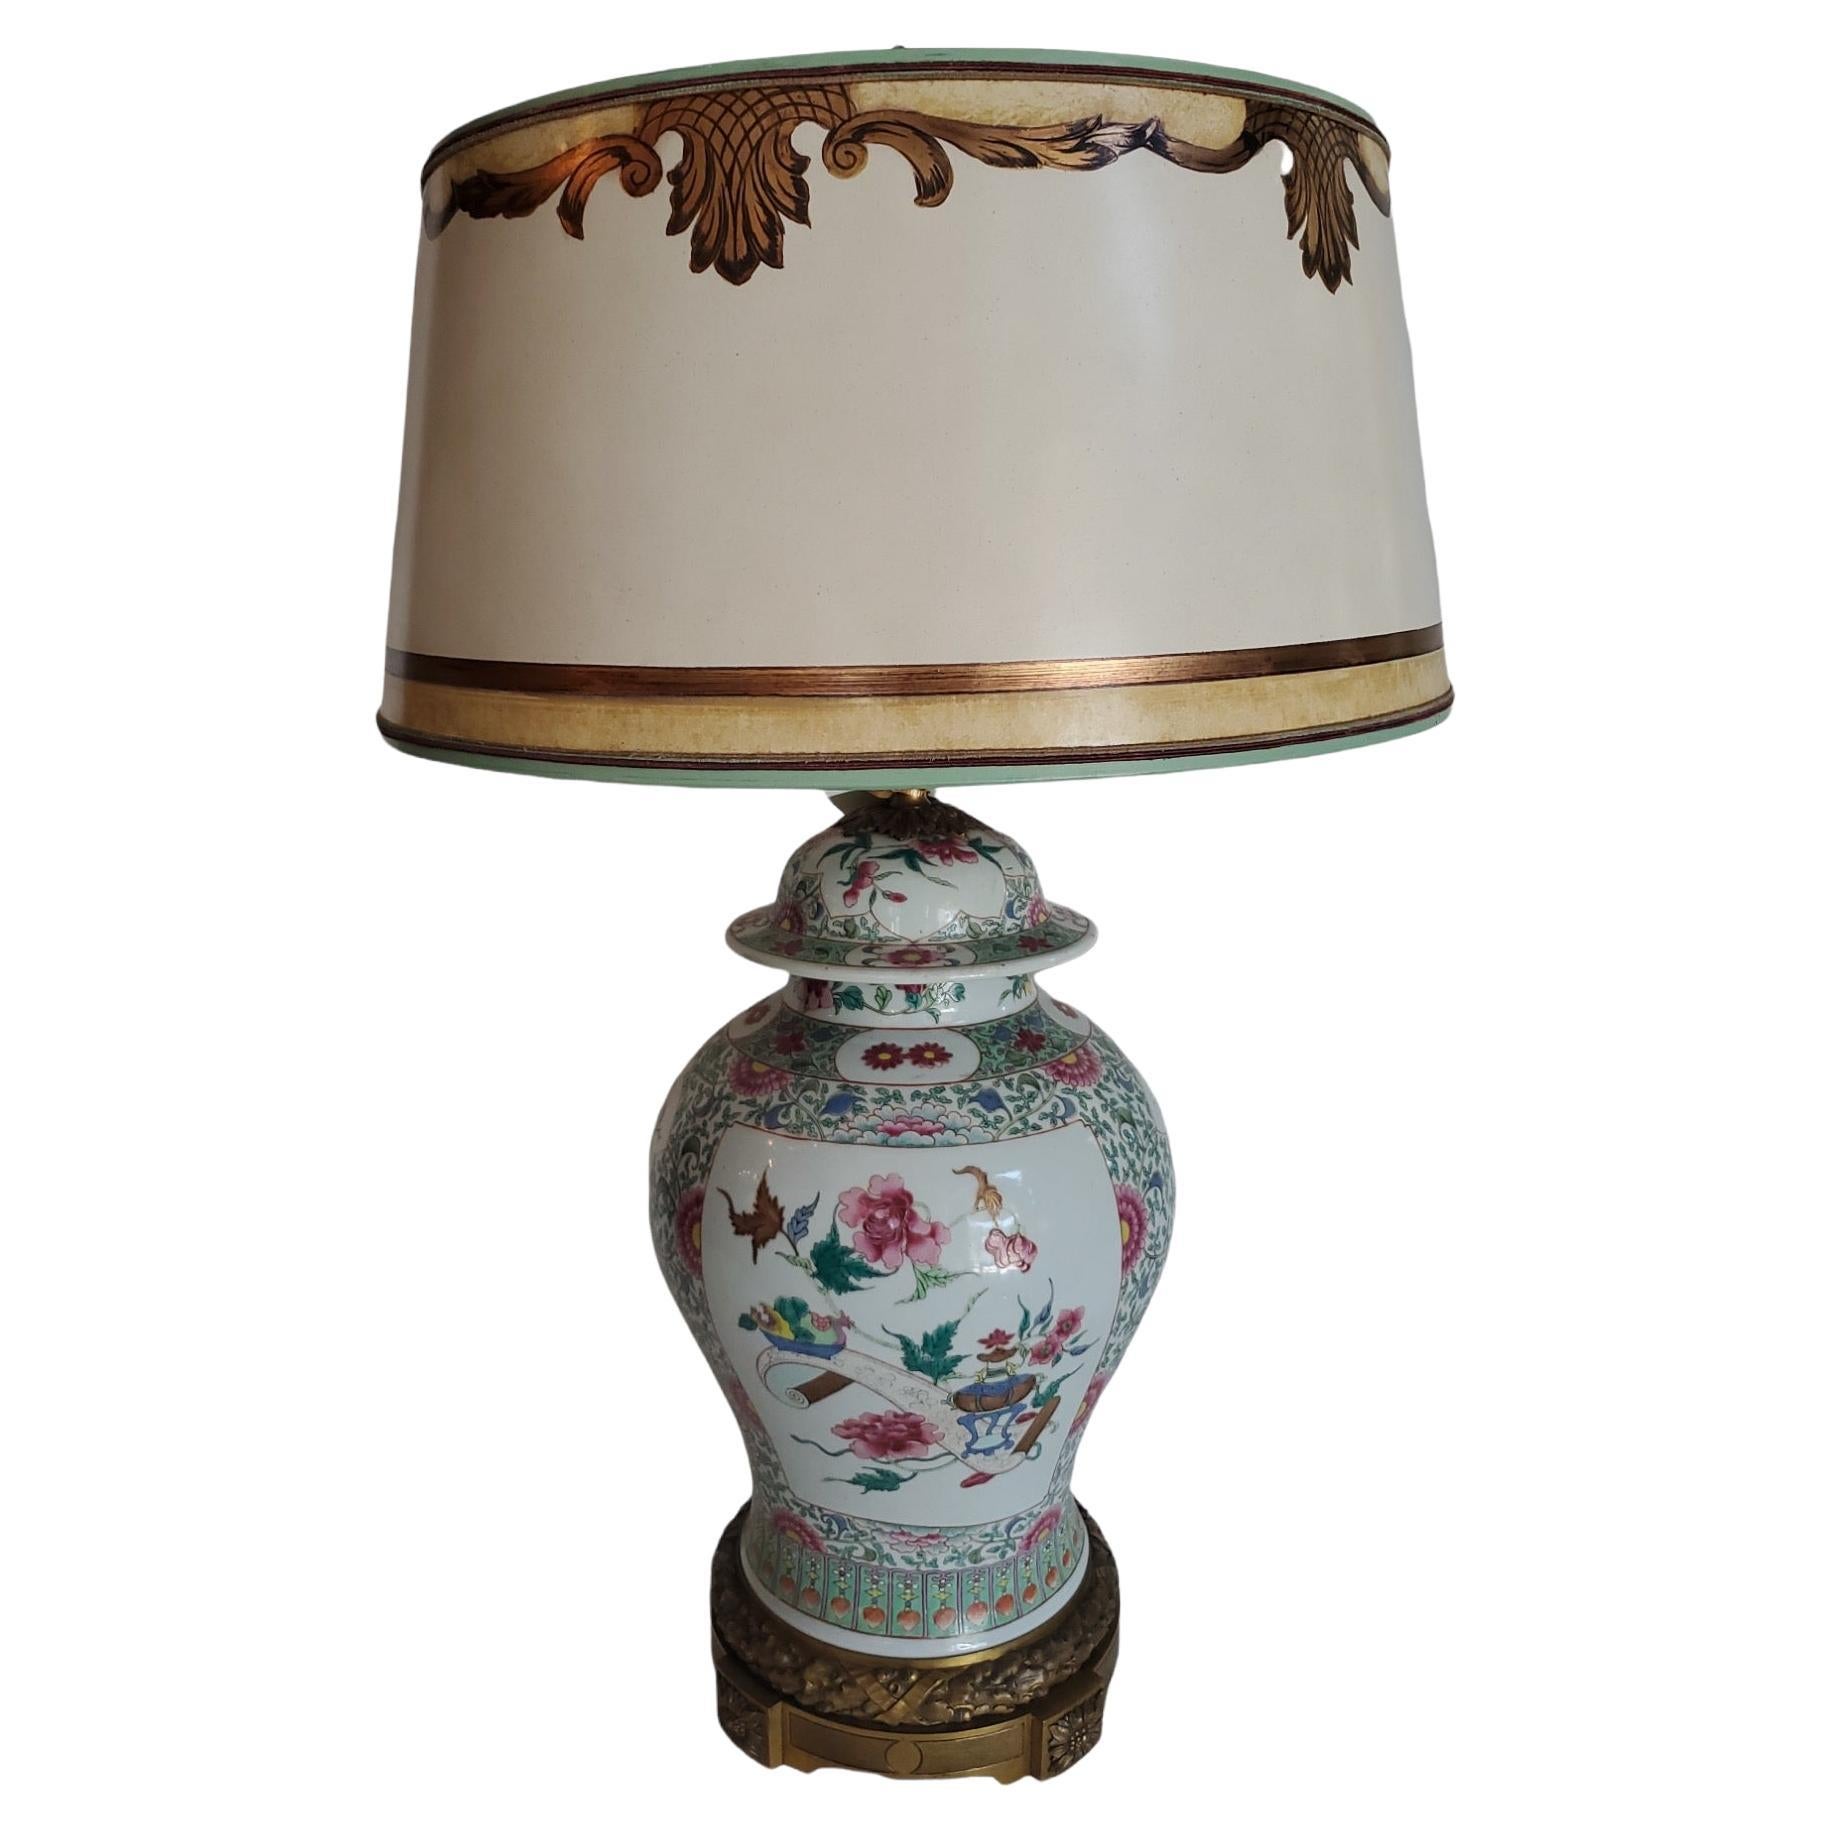 Chinesische Export-Gingerglas-Lampe aus dem 19. Jahrhundert